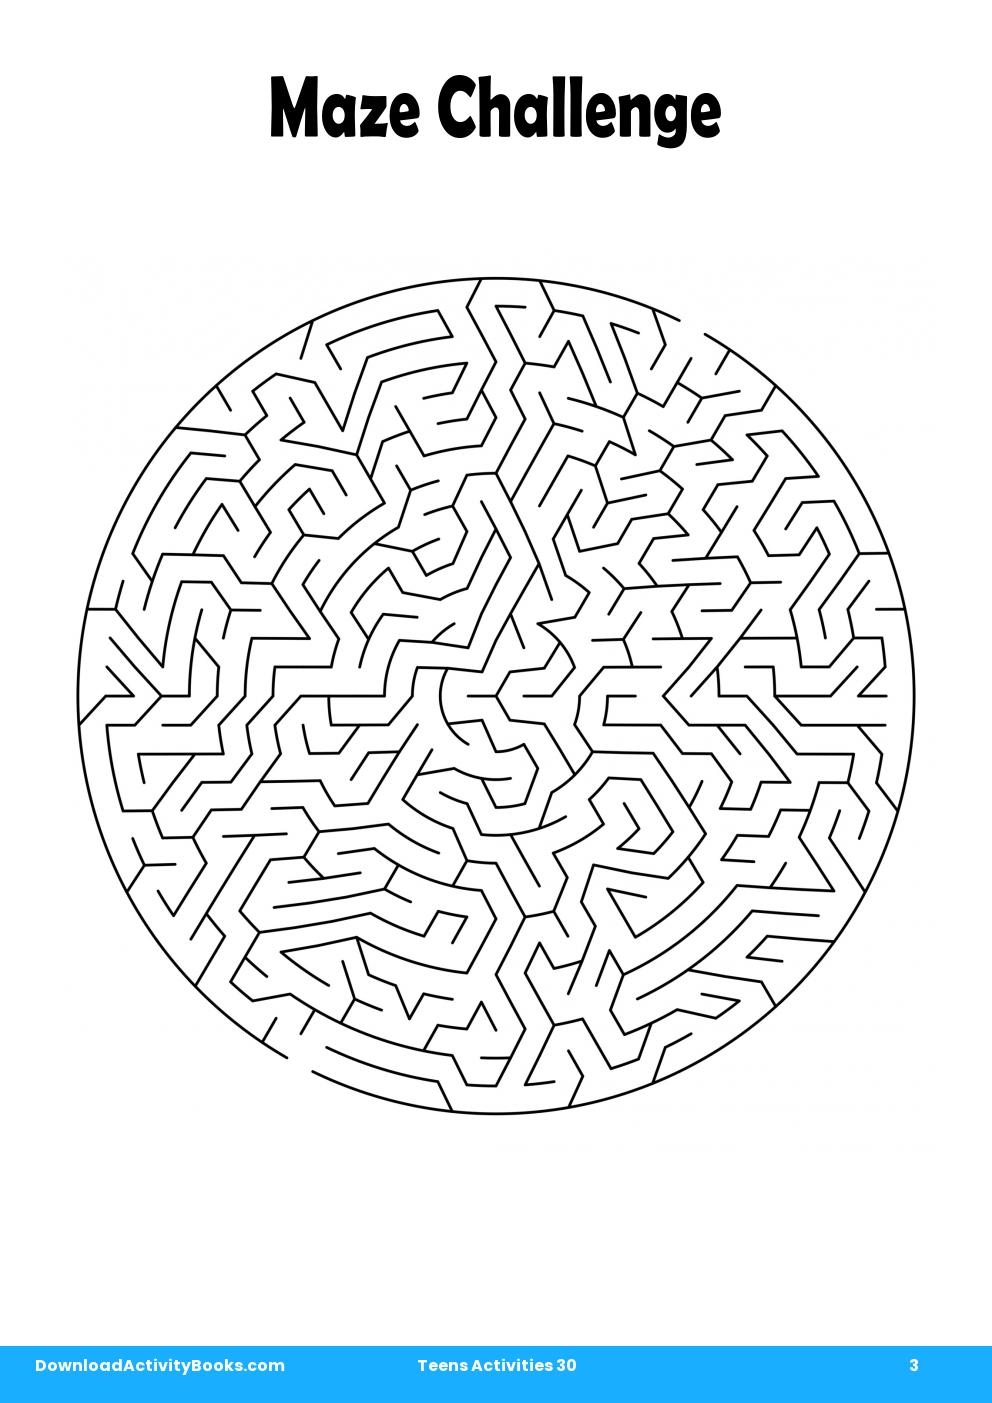 Maze Challenge in Teens Activities 30